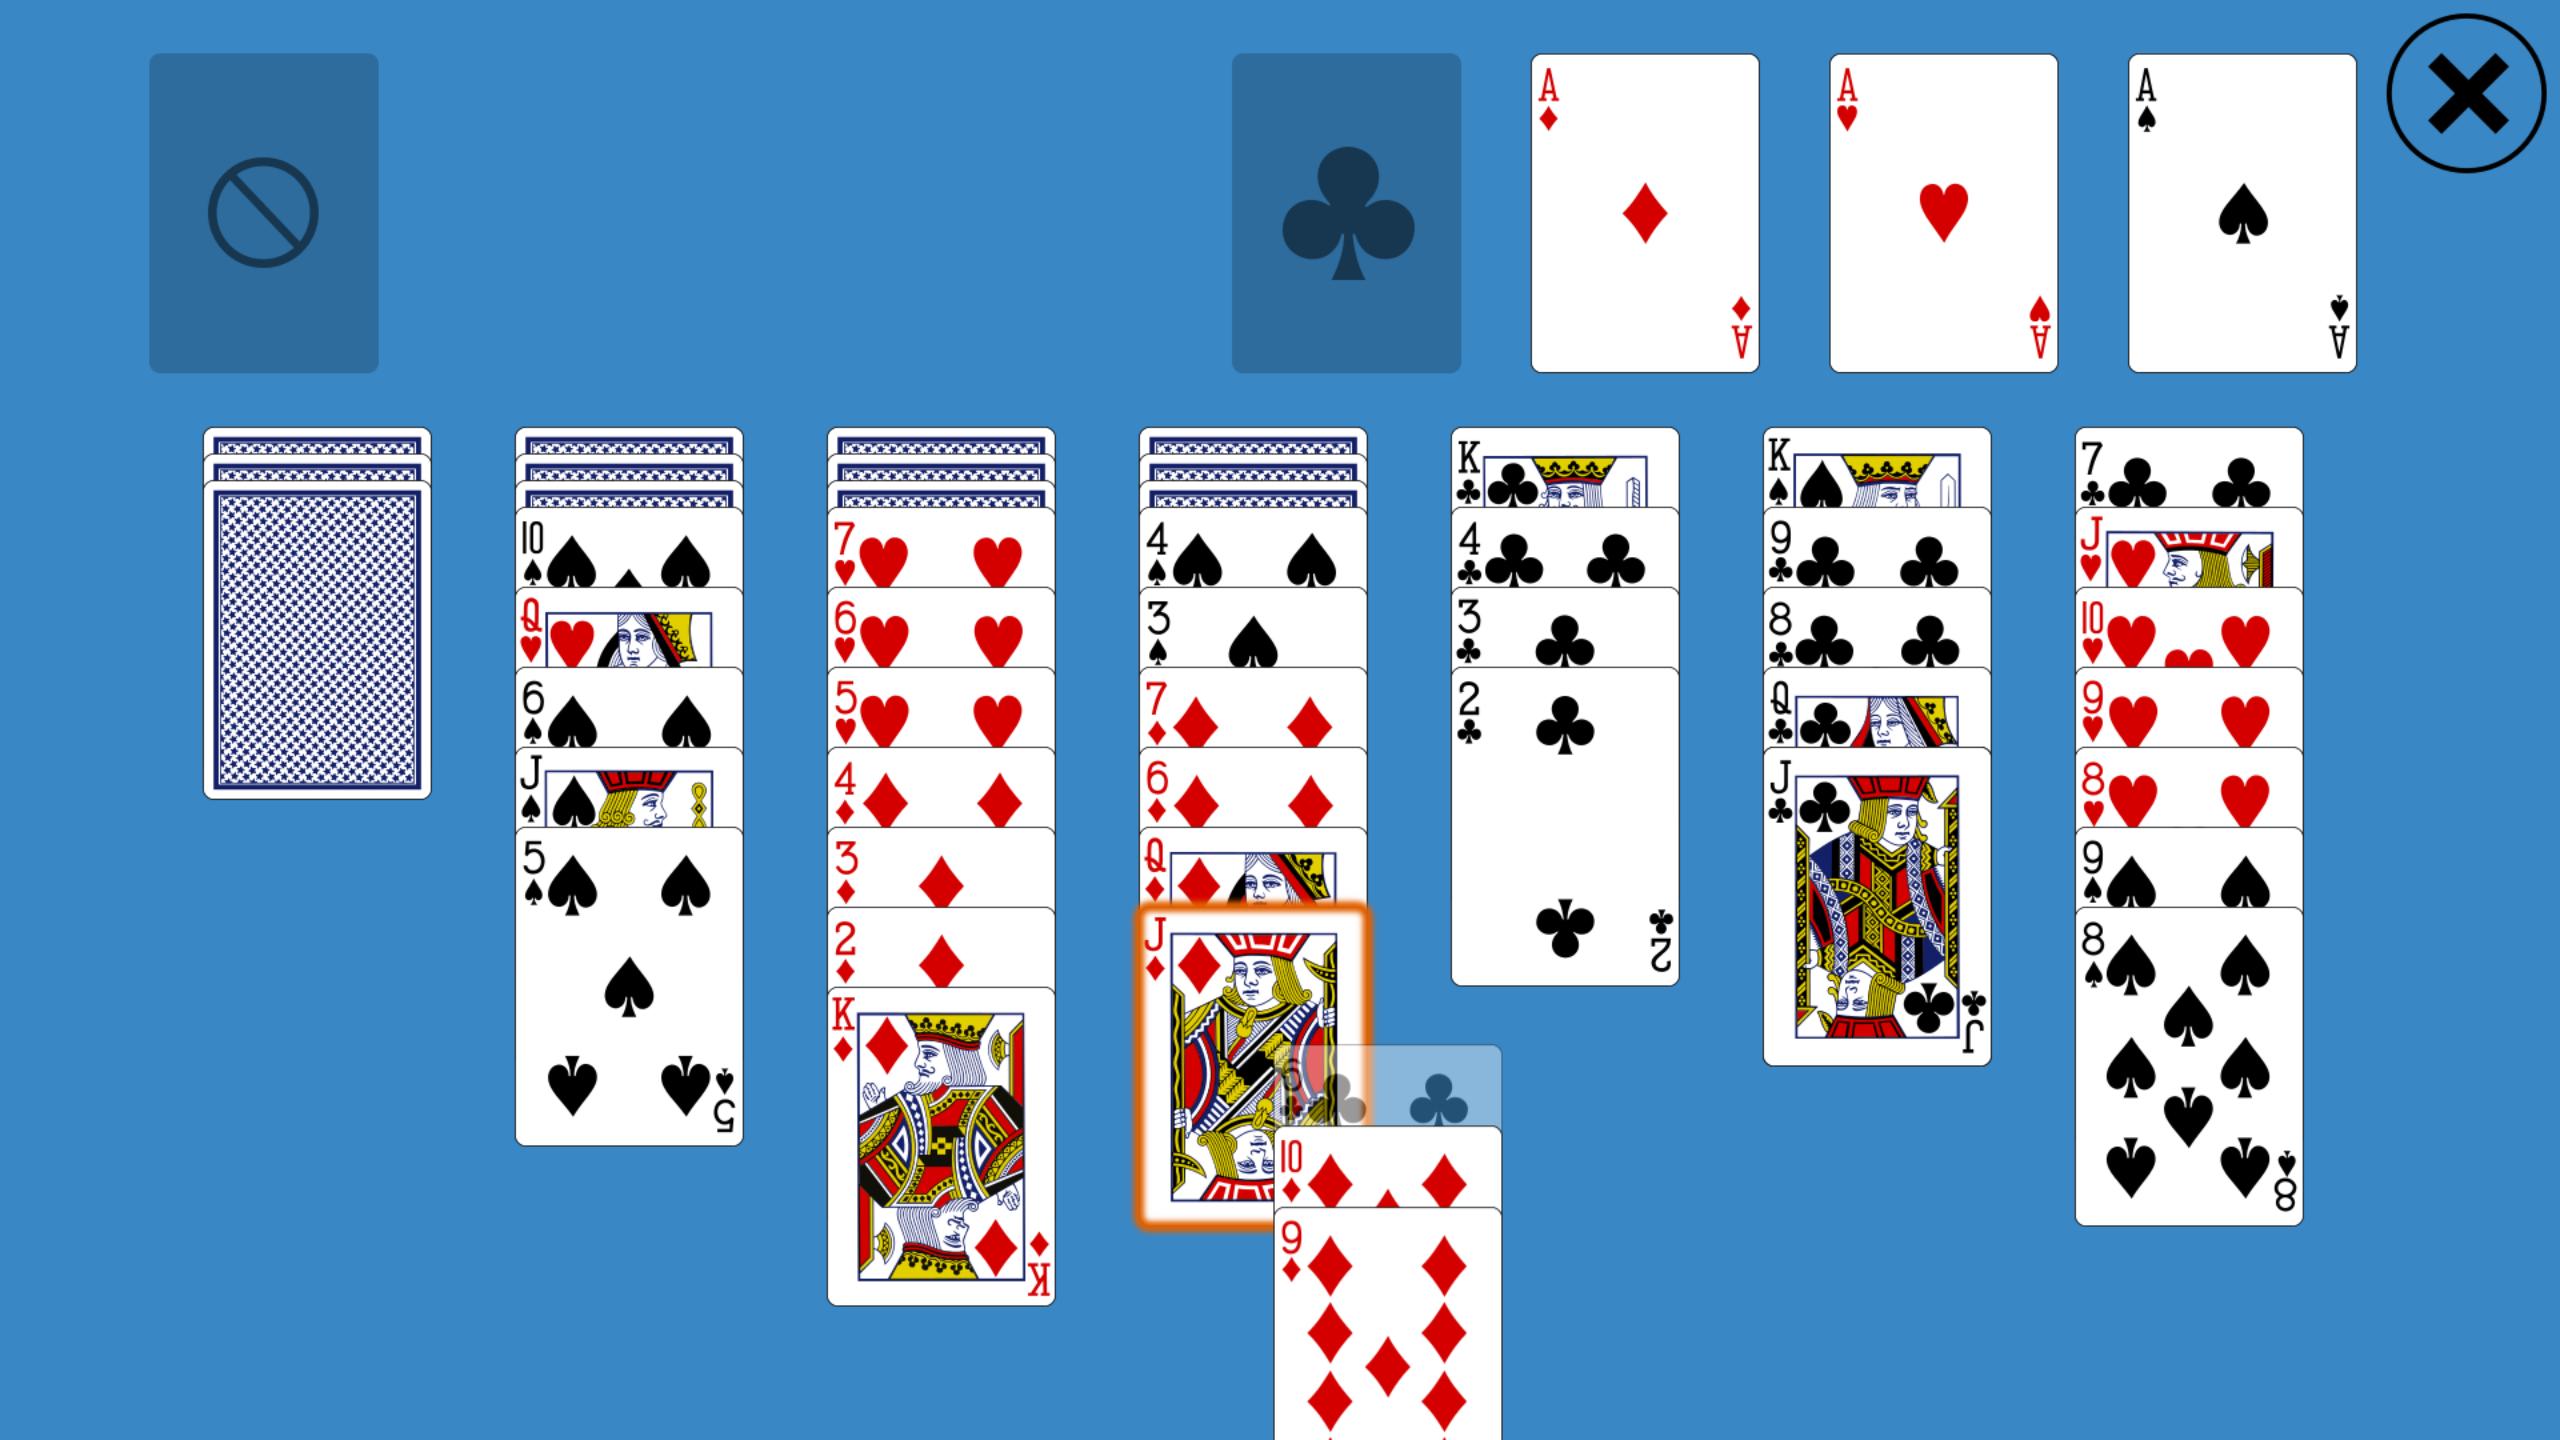 Игра двойной скорпион пасьянс играть. Косынка расклад 36 карт. Разложить пасьянс. Пасьянс из 36 карт для начинающих. Пасьянс разложить на картах.